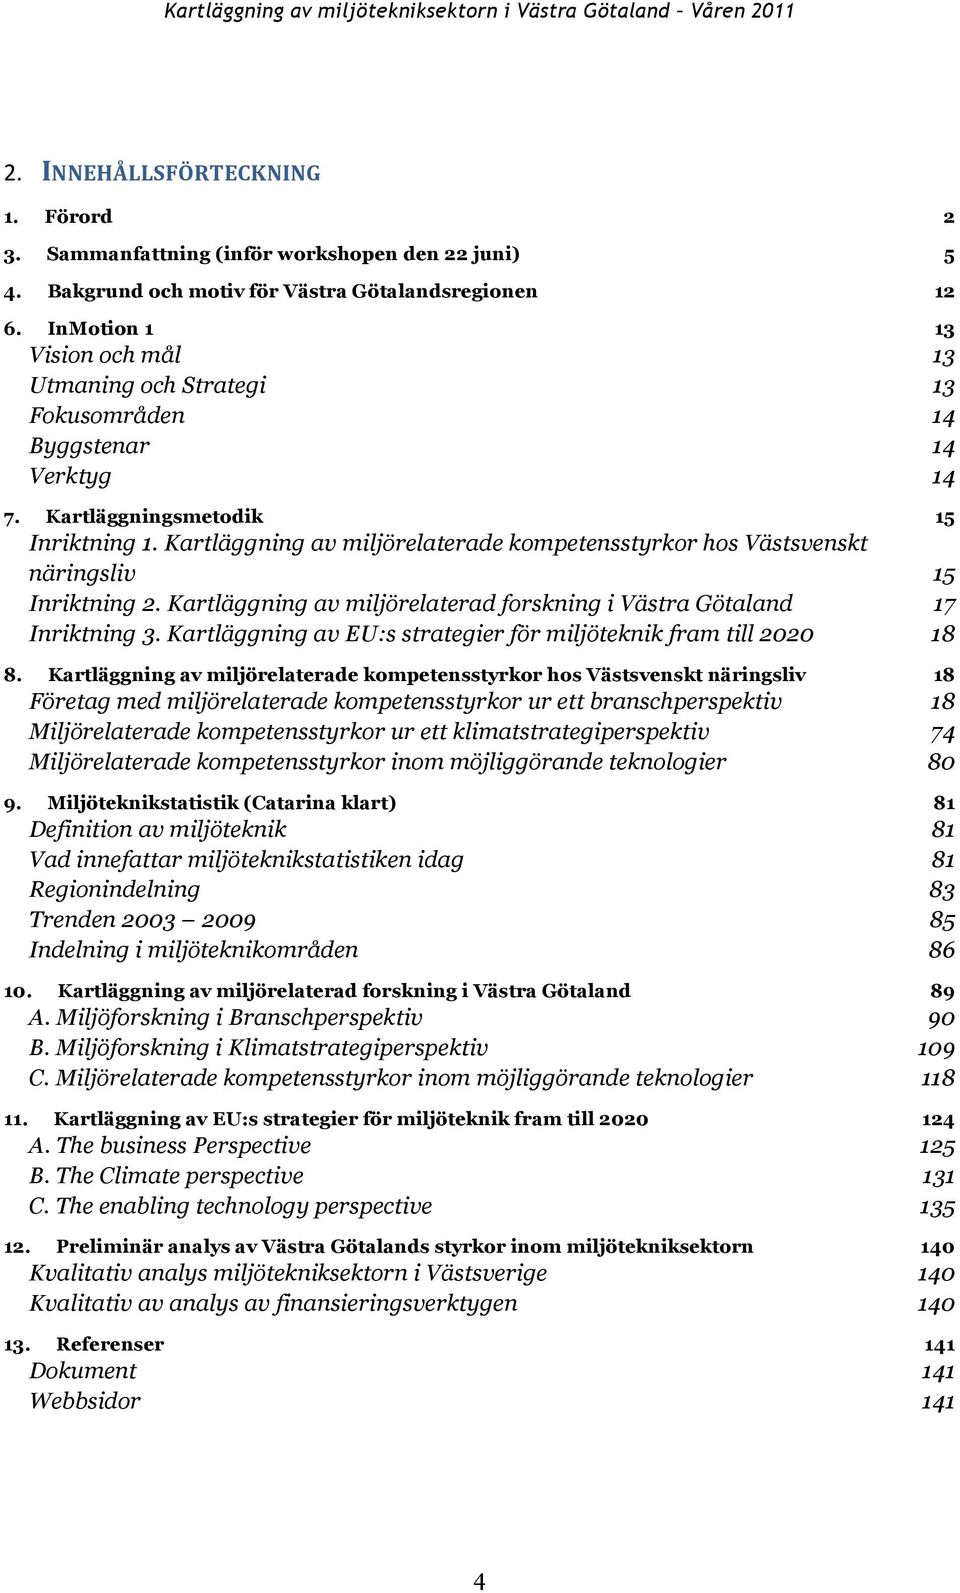 Kartläggning av miljörelaterade kompetensstyrkor hos Västsvenskt näringsliv 15 Inriktning 2. Kartläggning av miljörelaterad forskning i Västra Götaland 17 Inriktning 3.